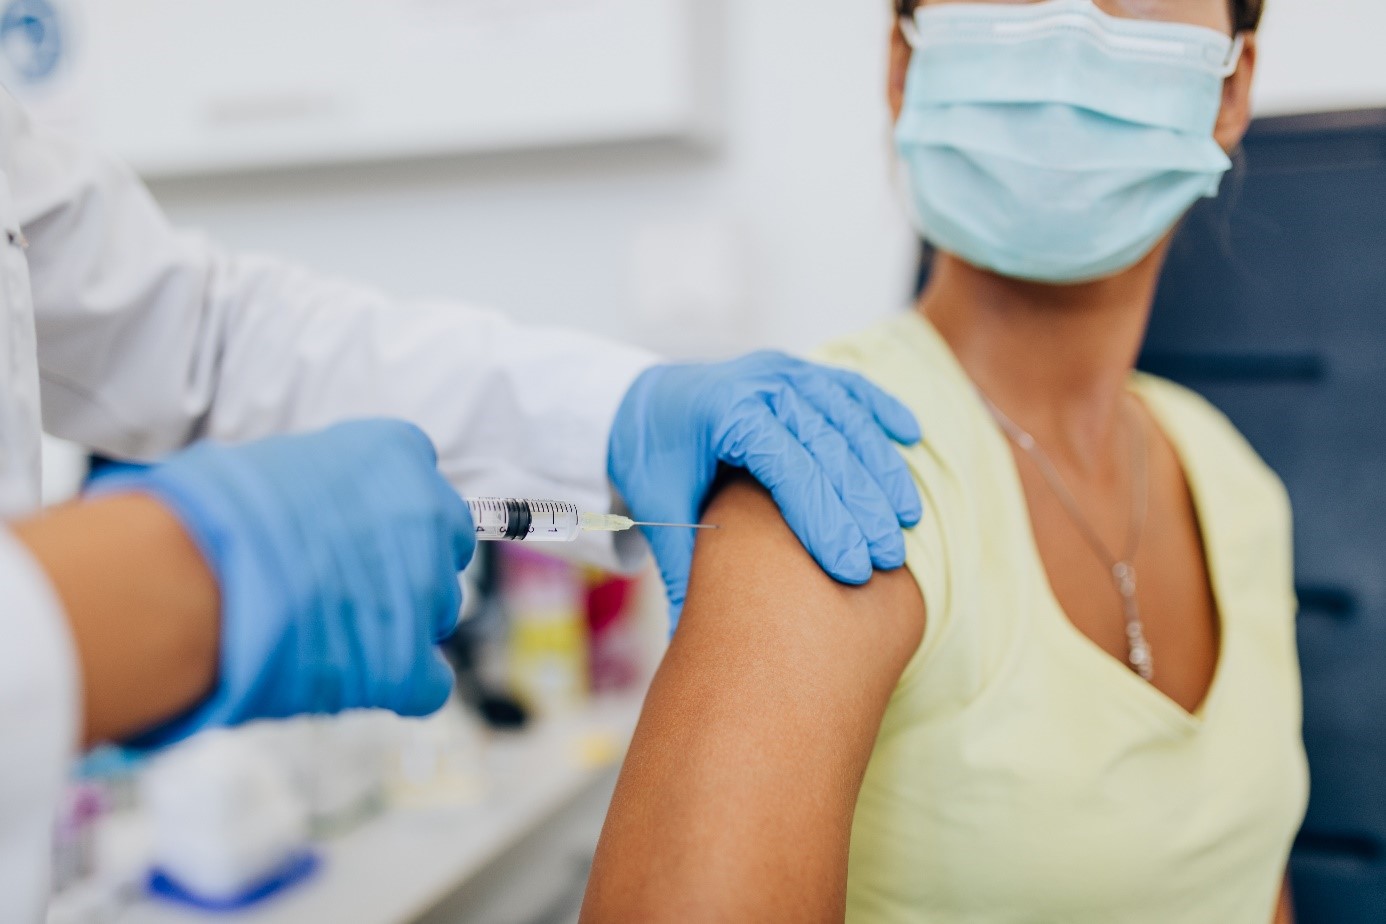 Trois premiers essais cliniques vaccinaux prévus à partir du mois de décembre via la plateforme COVIREIVAC de l’Inserm